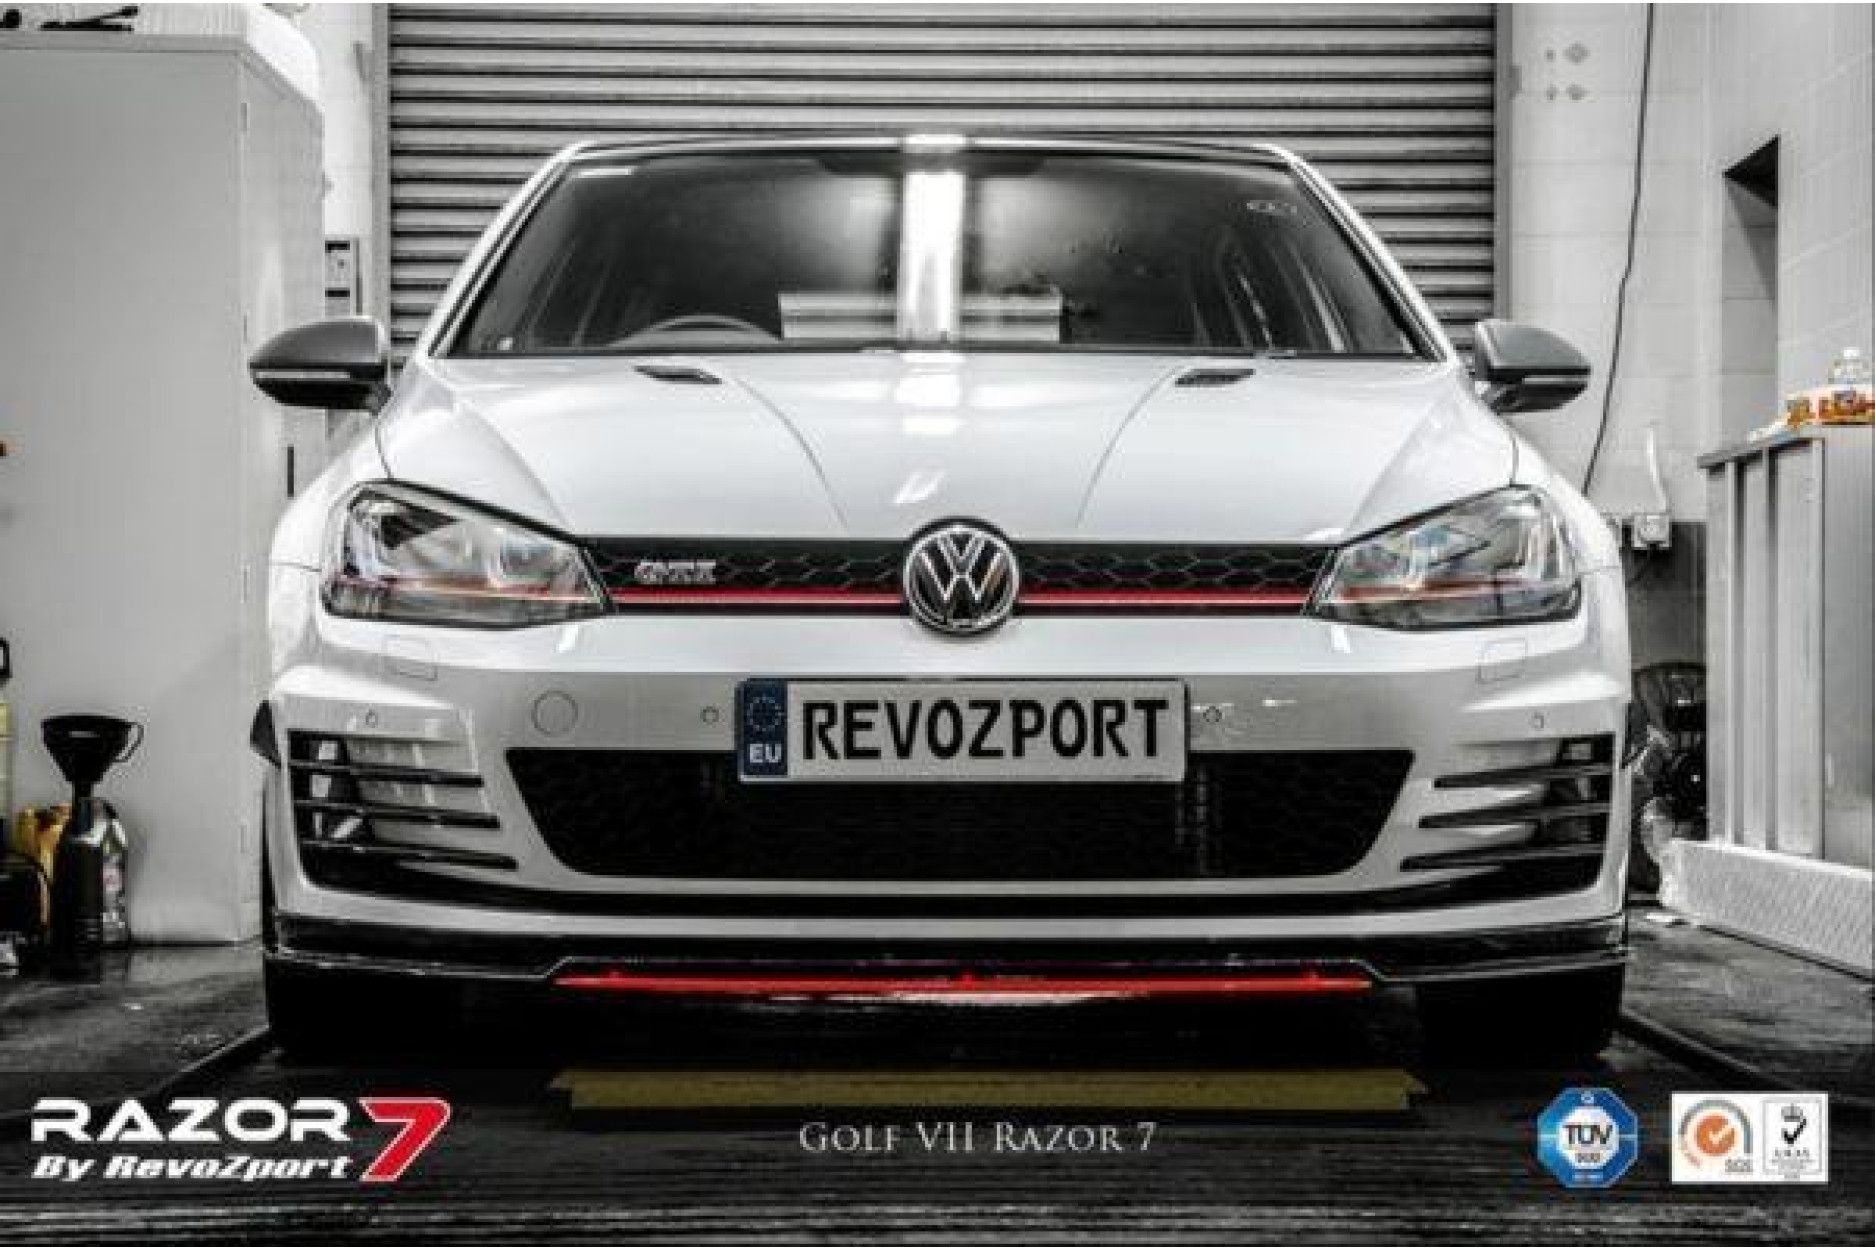 RevoZport Carbon Bodykit for Volkswagen Golf MK7|Golf 7 GTI pre-facelift "Razor 7" (6) 